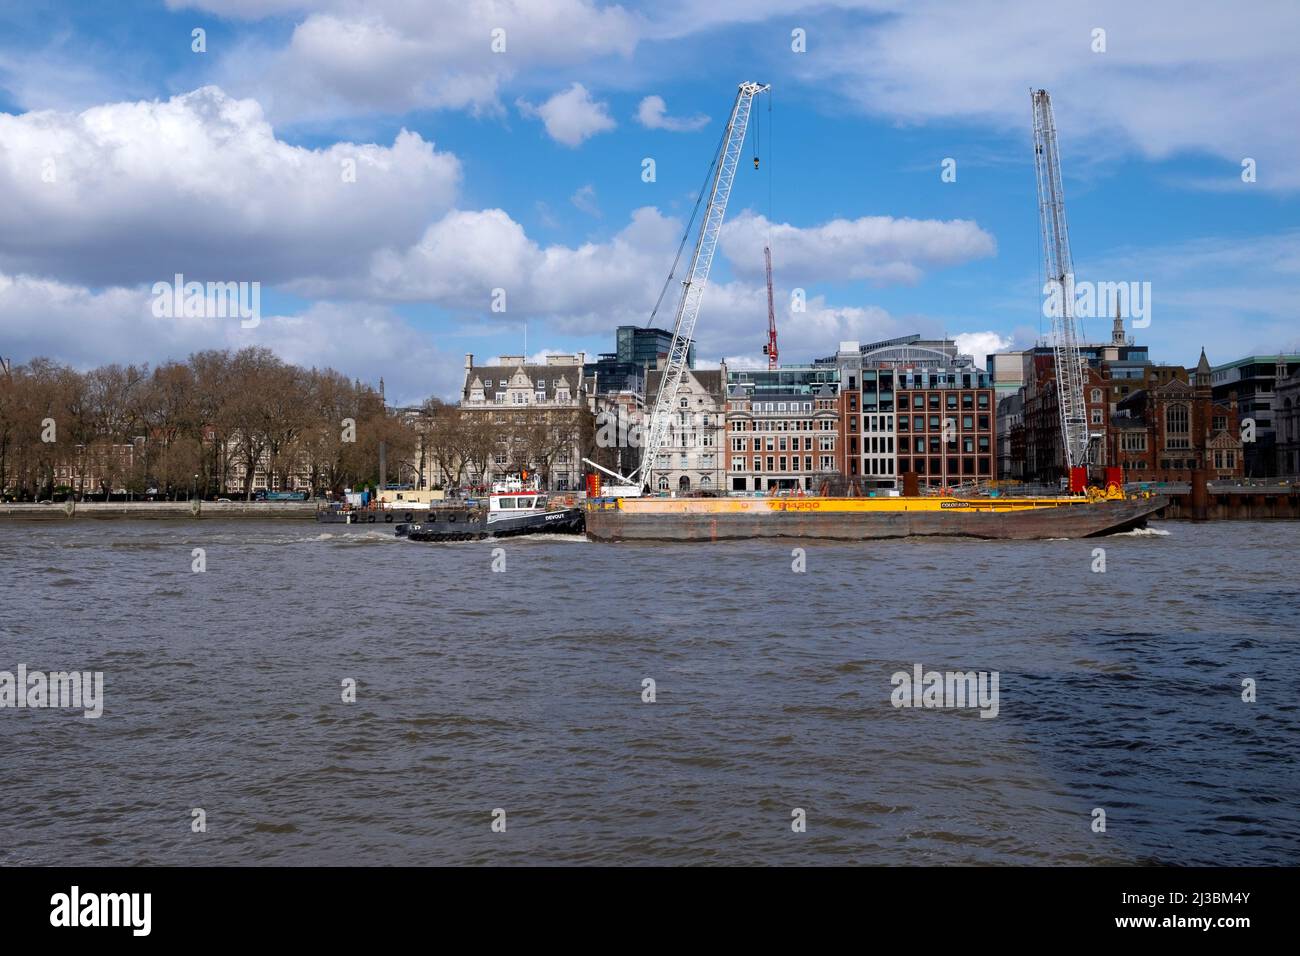 Vue sur les bâtiments, grues, barge, remorqueur sur le site de construction de Super Sewer à travers la Tamise Victoria Embankment Mars 2022 Londres Angleterre KATHY DEWITT Banque D'Images